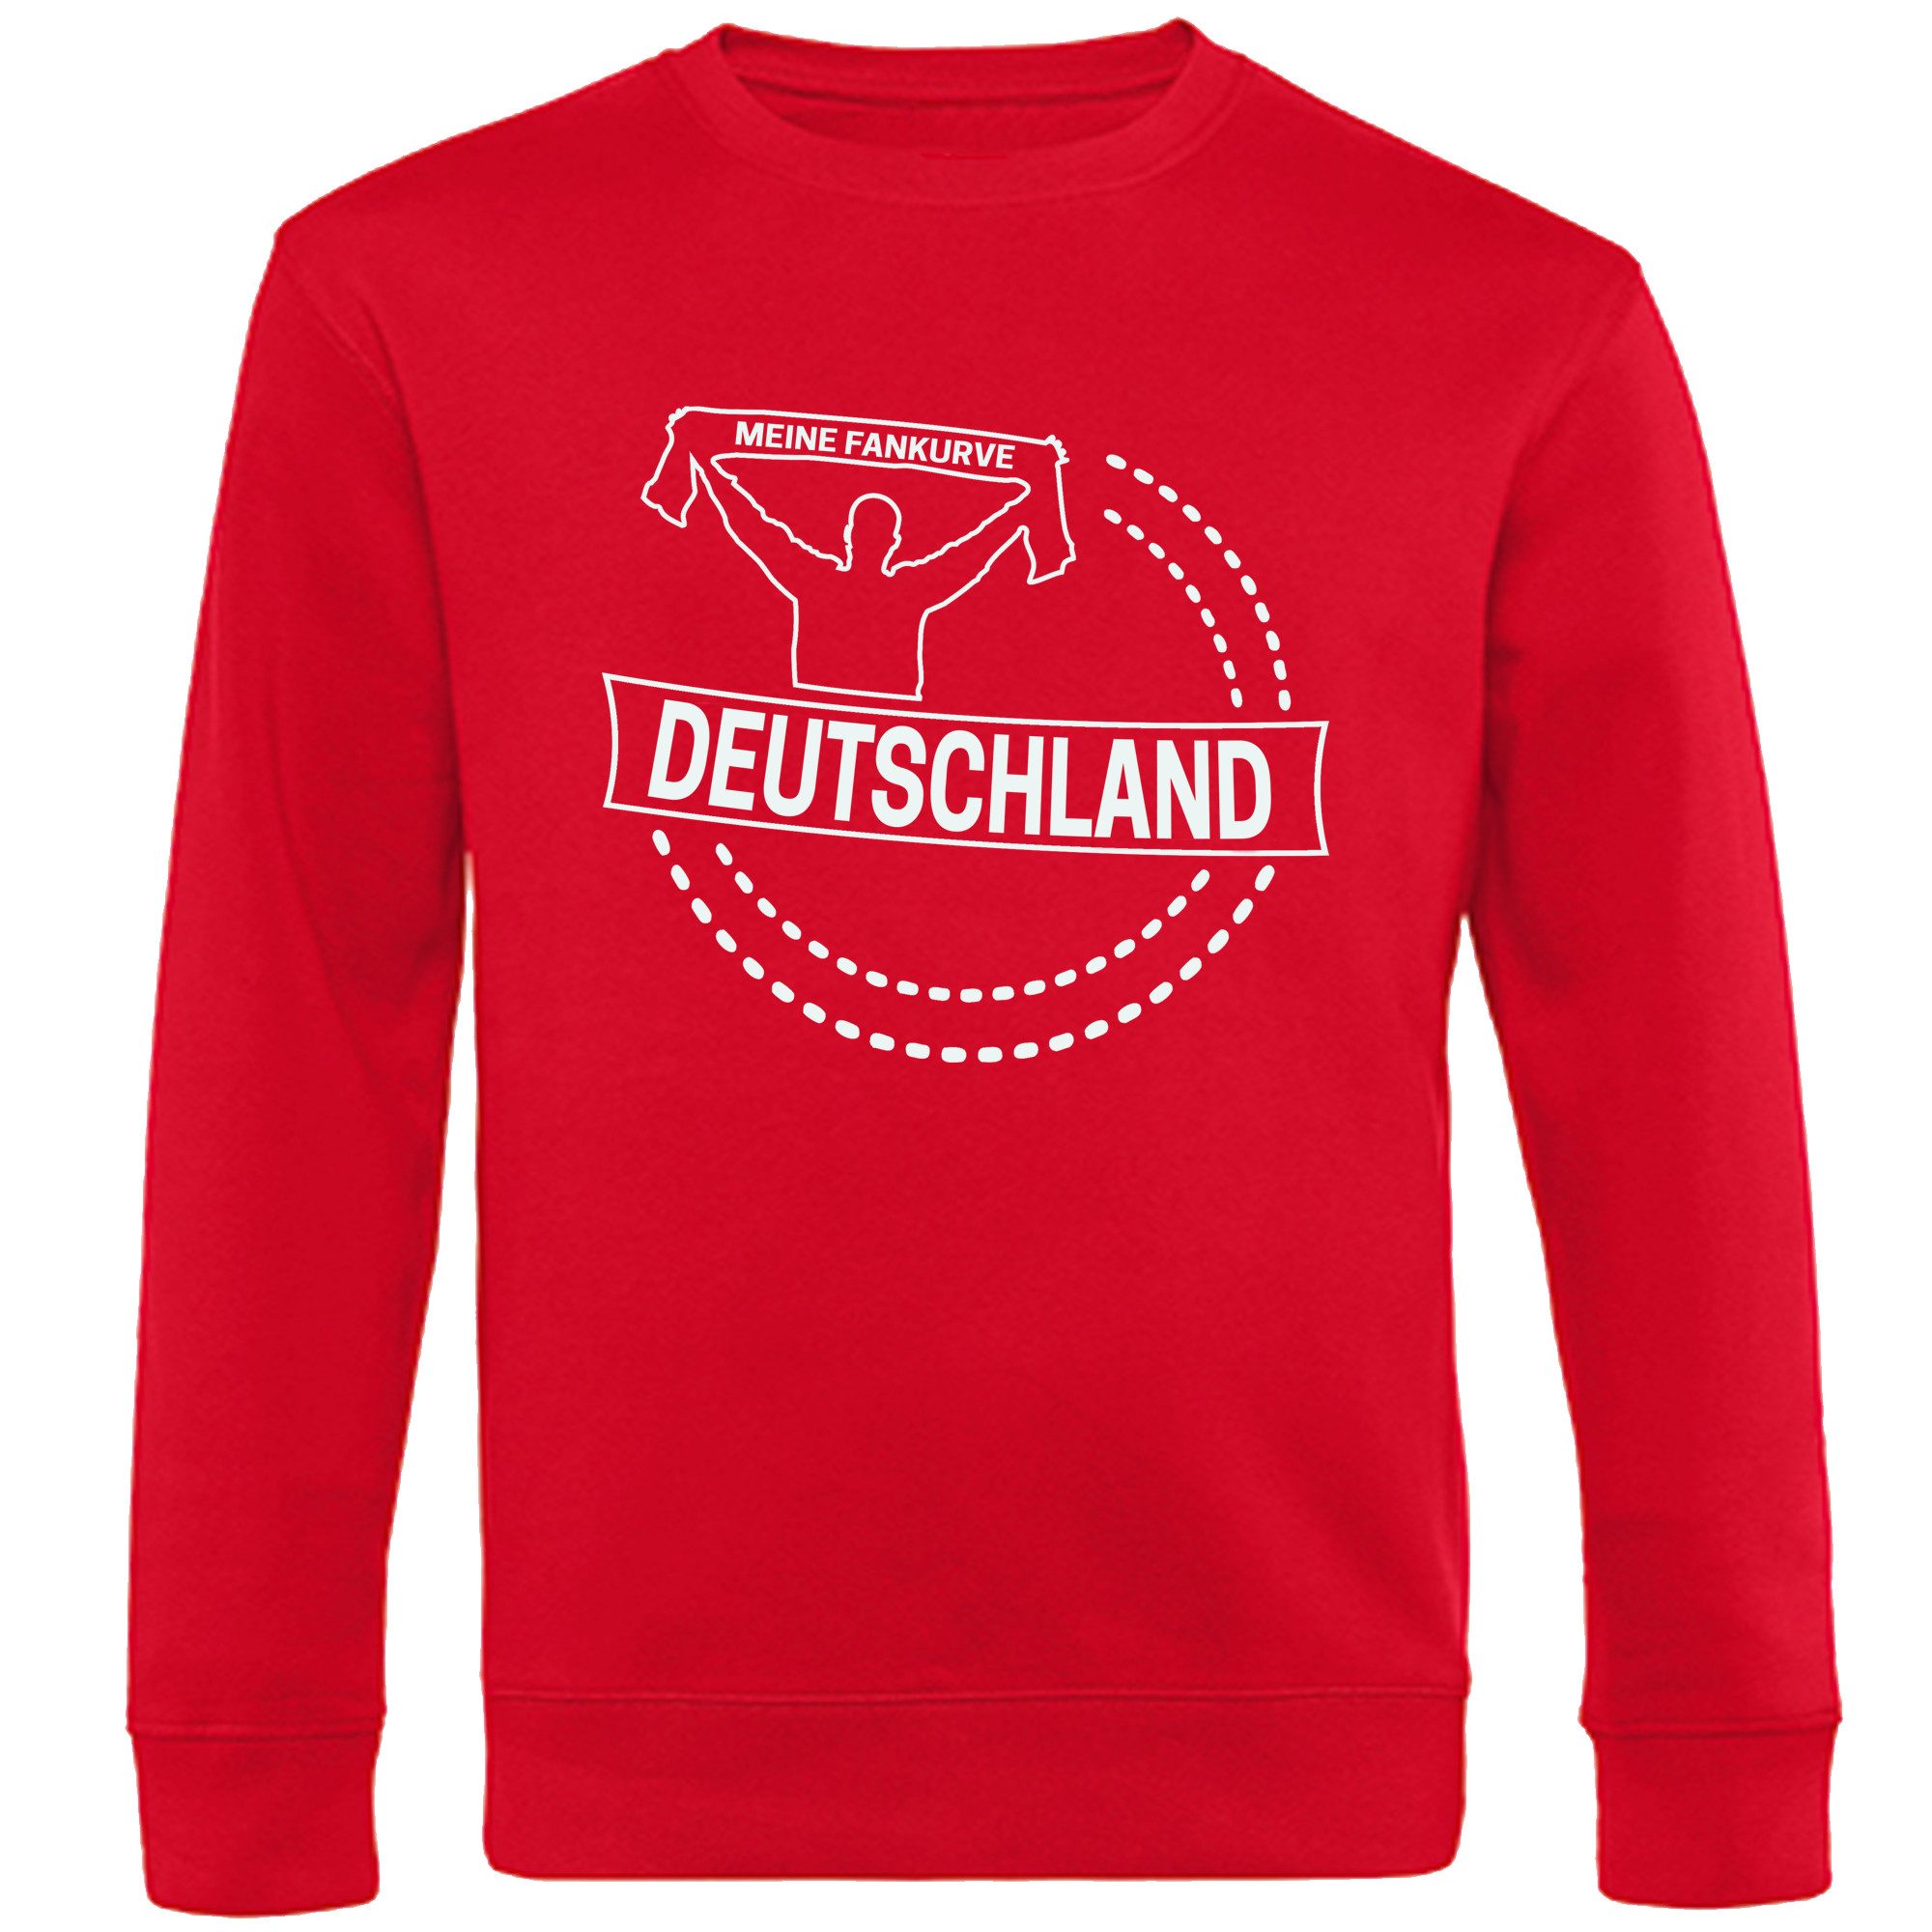 multifanshop Sweatshirt Deutschland - Meine Fankurve - Pullover